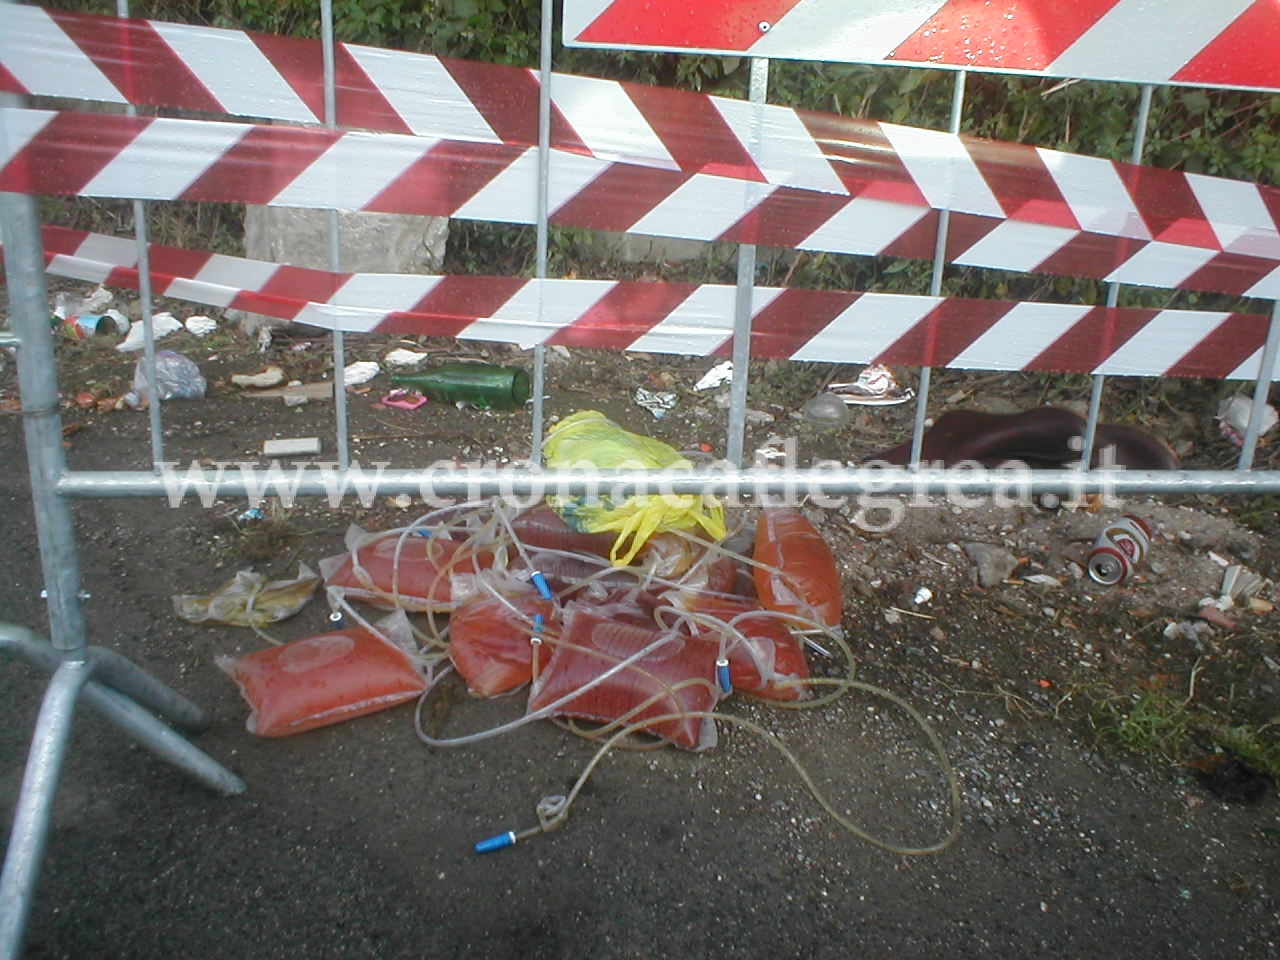 FOTO SHOCK/ Monterusciello: cateteri insanguinati lasciati in strada